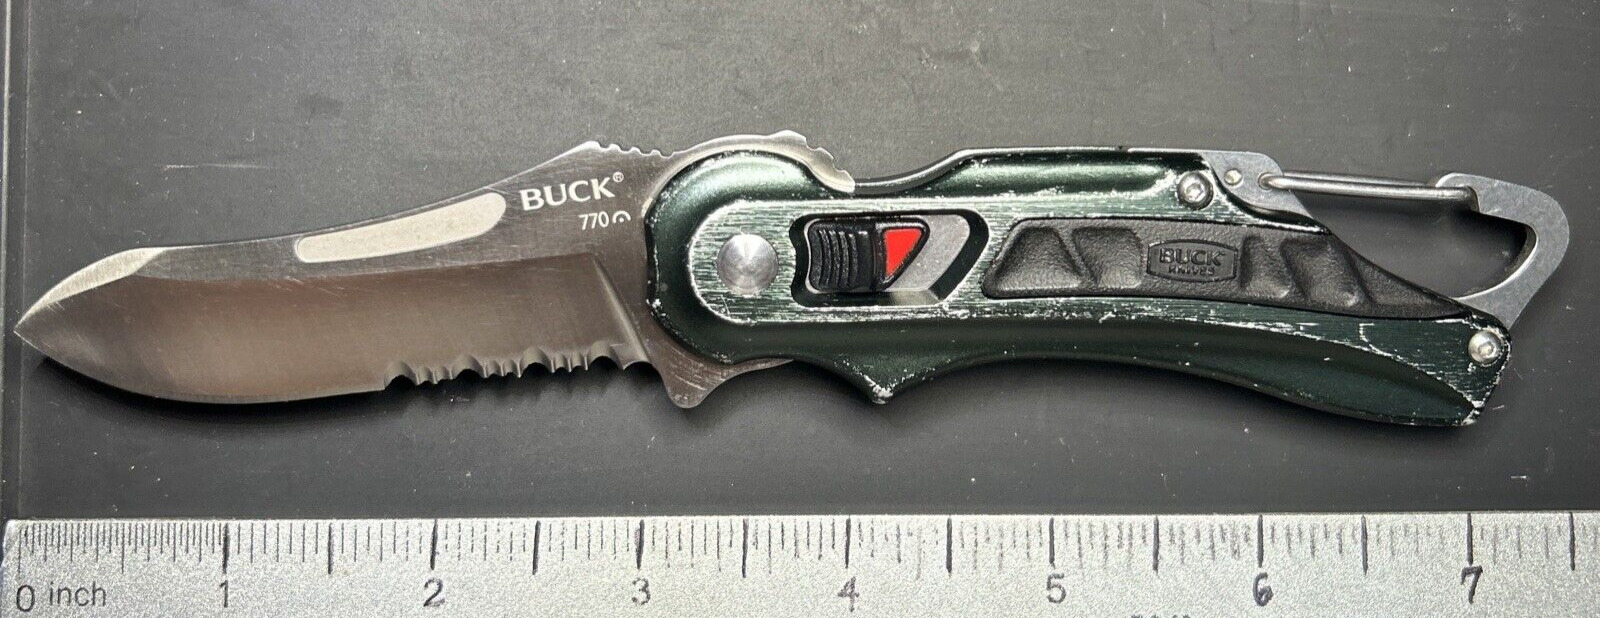 Buck 770 Flash Point Folding Knife Carabiner Bottle Opener 2013 VG USED